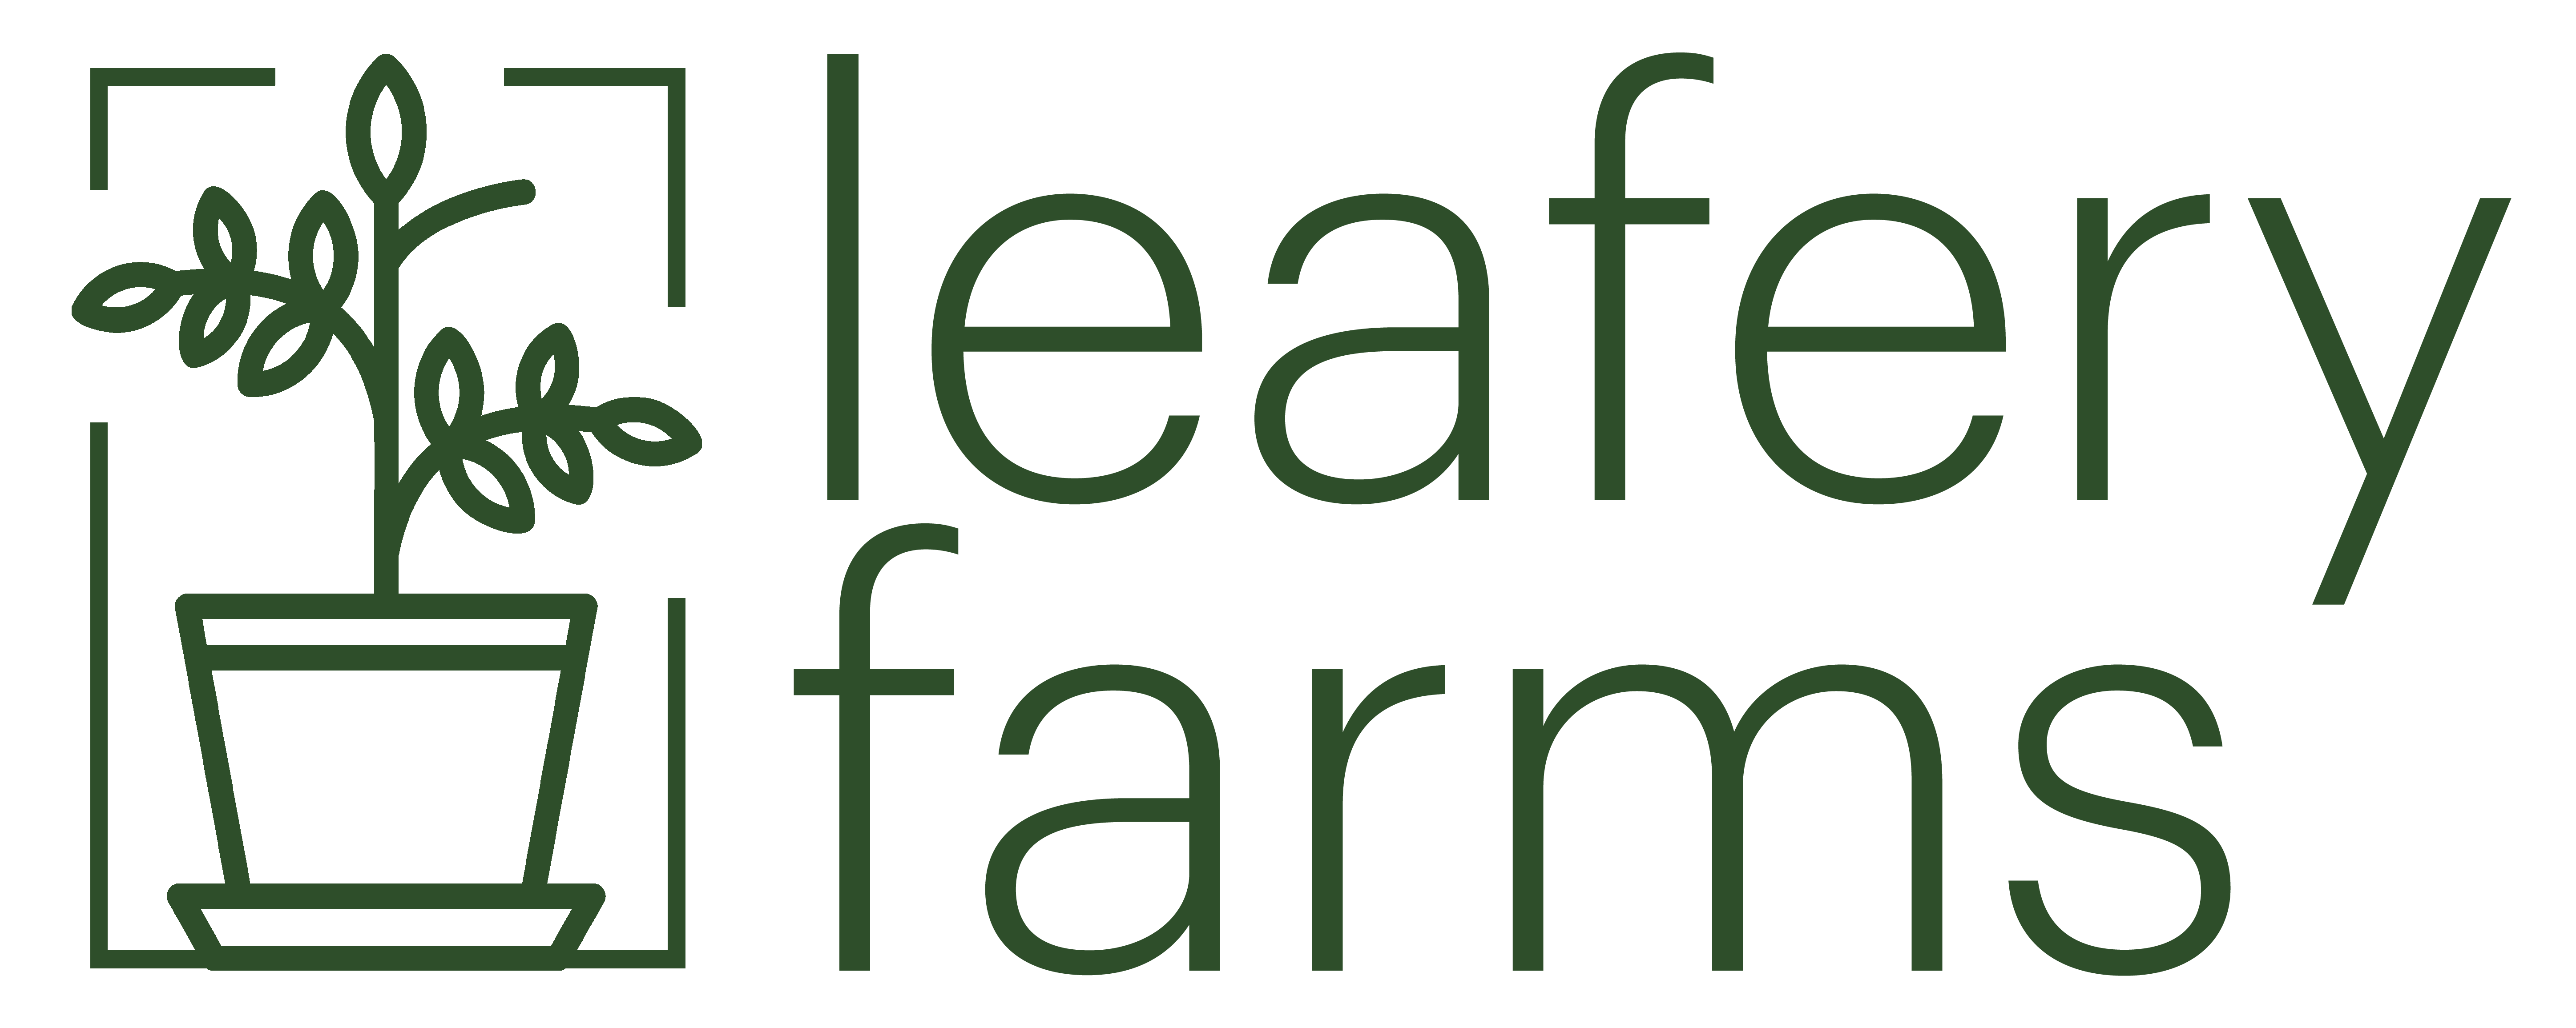 Leafery Farms